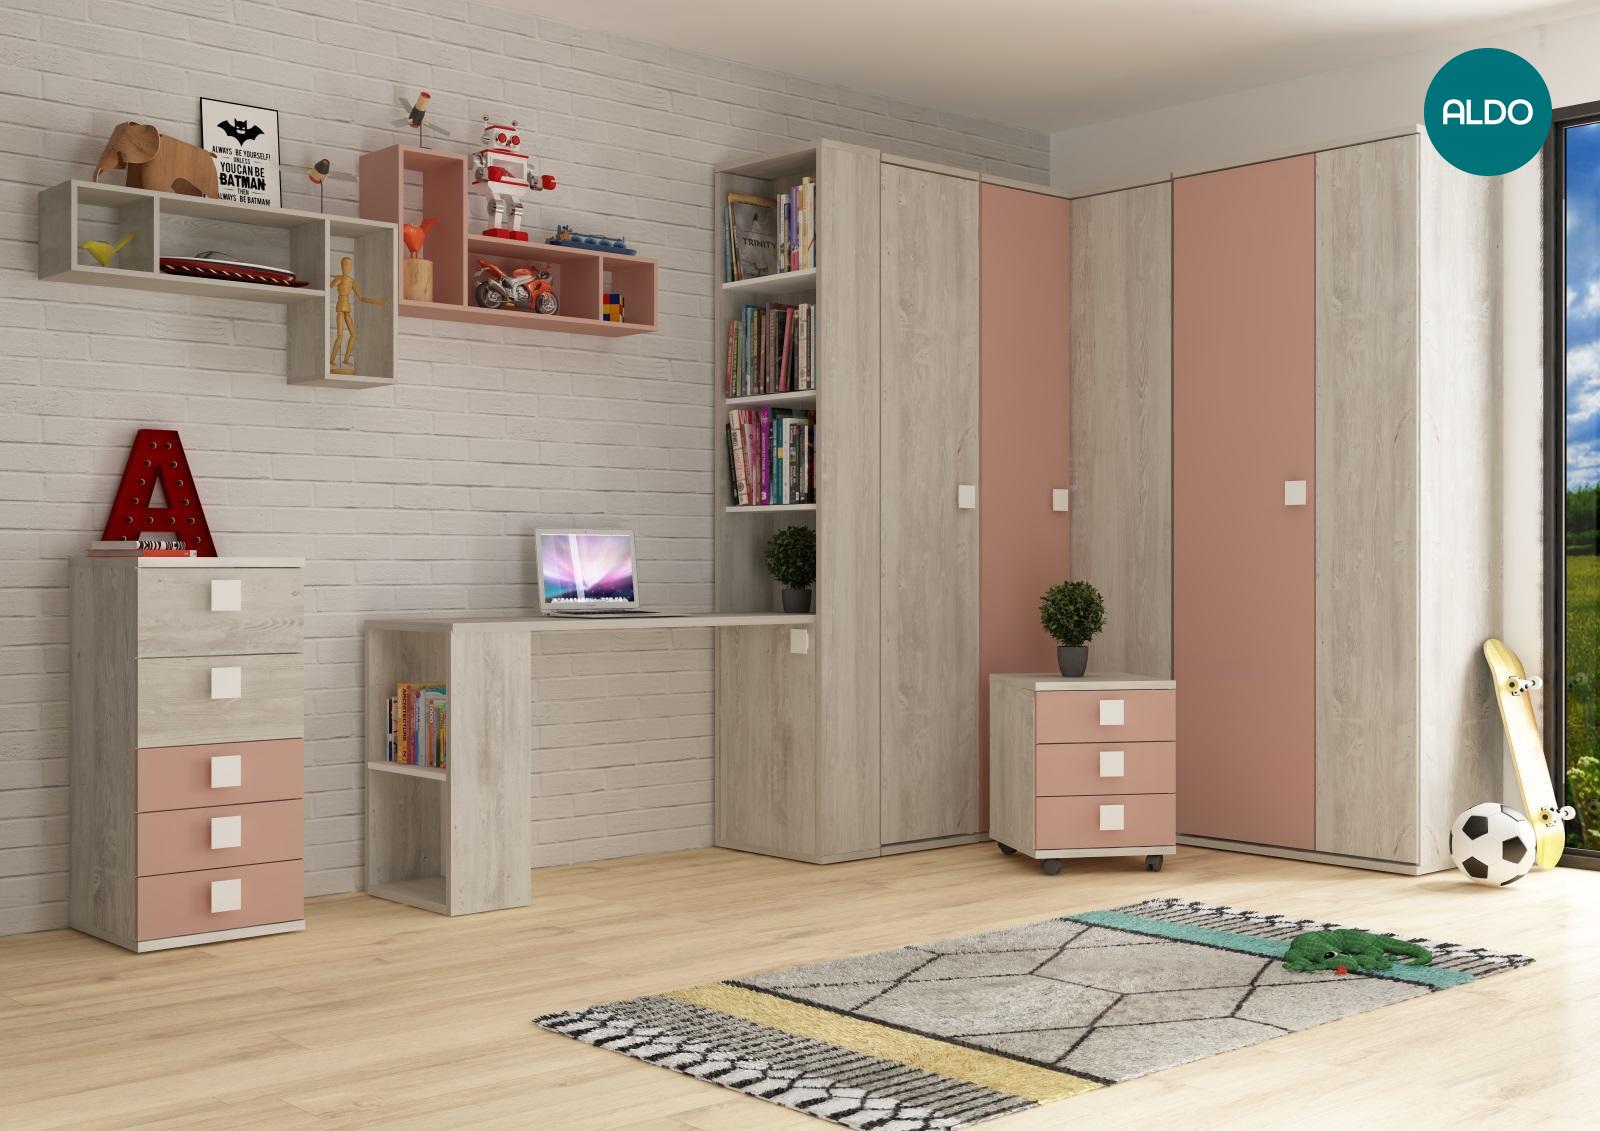 Nábytok do detskej izby, úložné priestory - antique pink, cascina